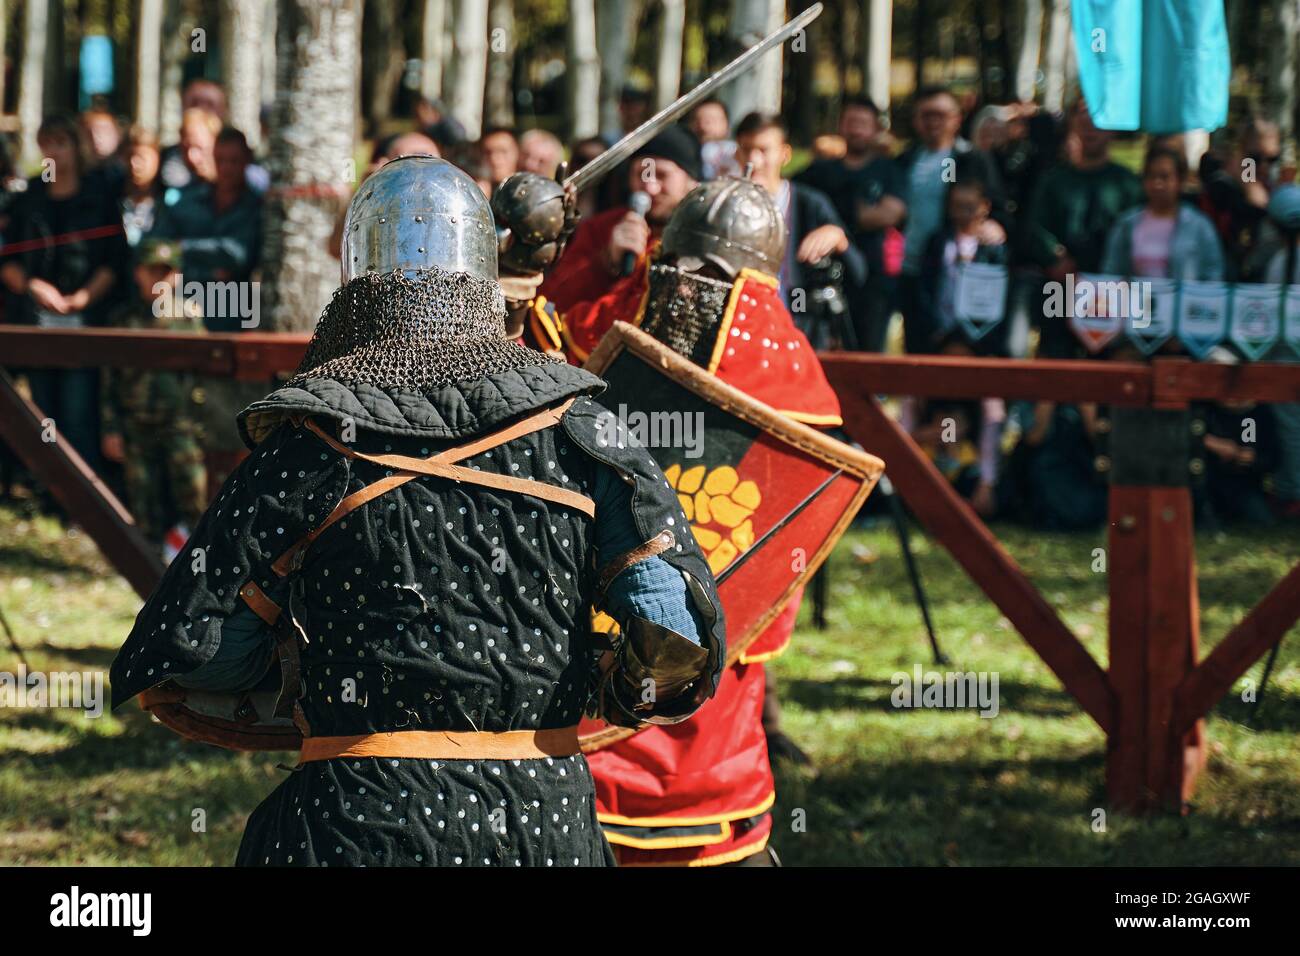 Ricostruzione di cavalieri nell'arena. Combatti di fronte al pubblico. Due cavalieri in armatura e con spade. Bishkek, Kirghizistan - 13 ottobre 2019 Foto Stock